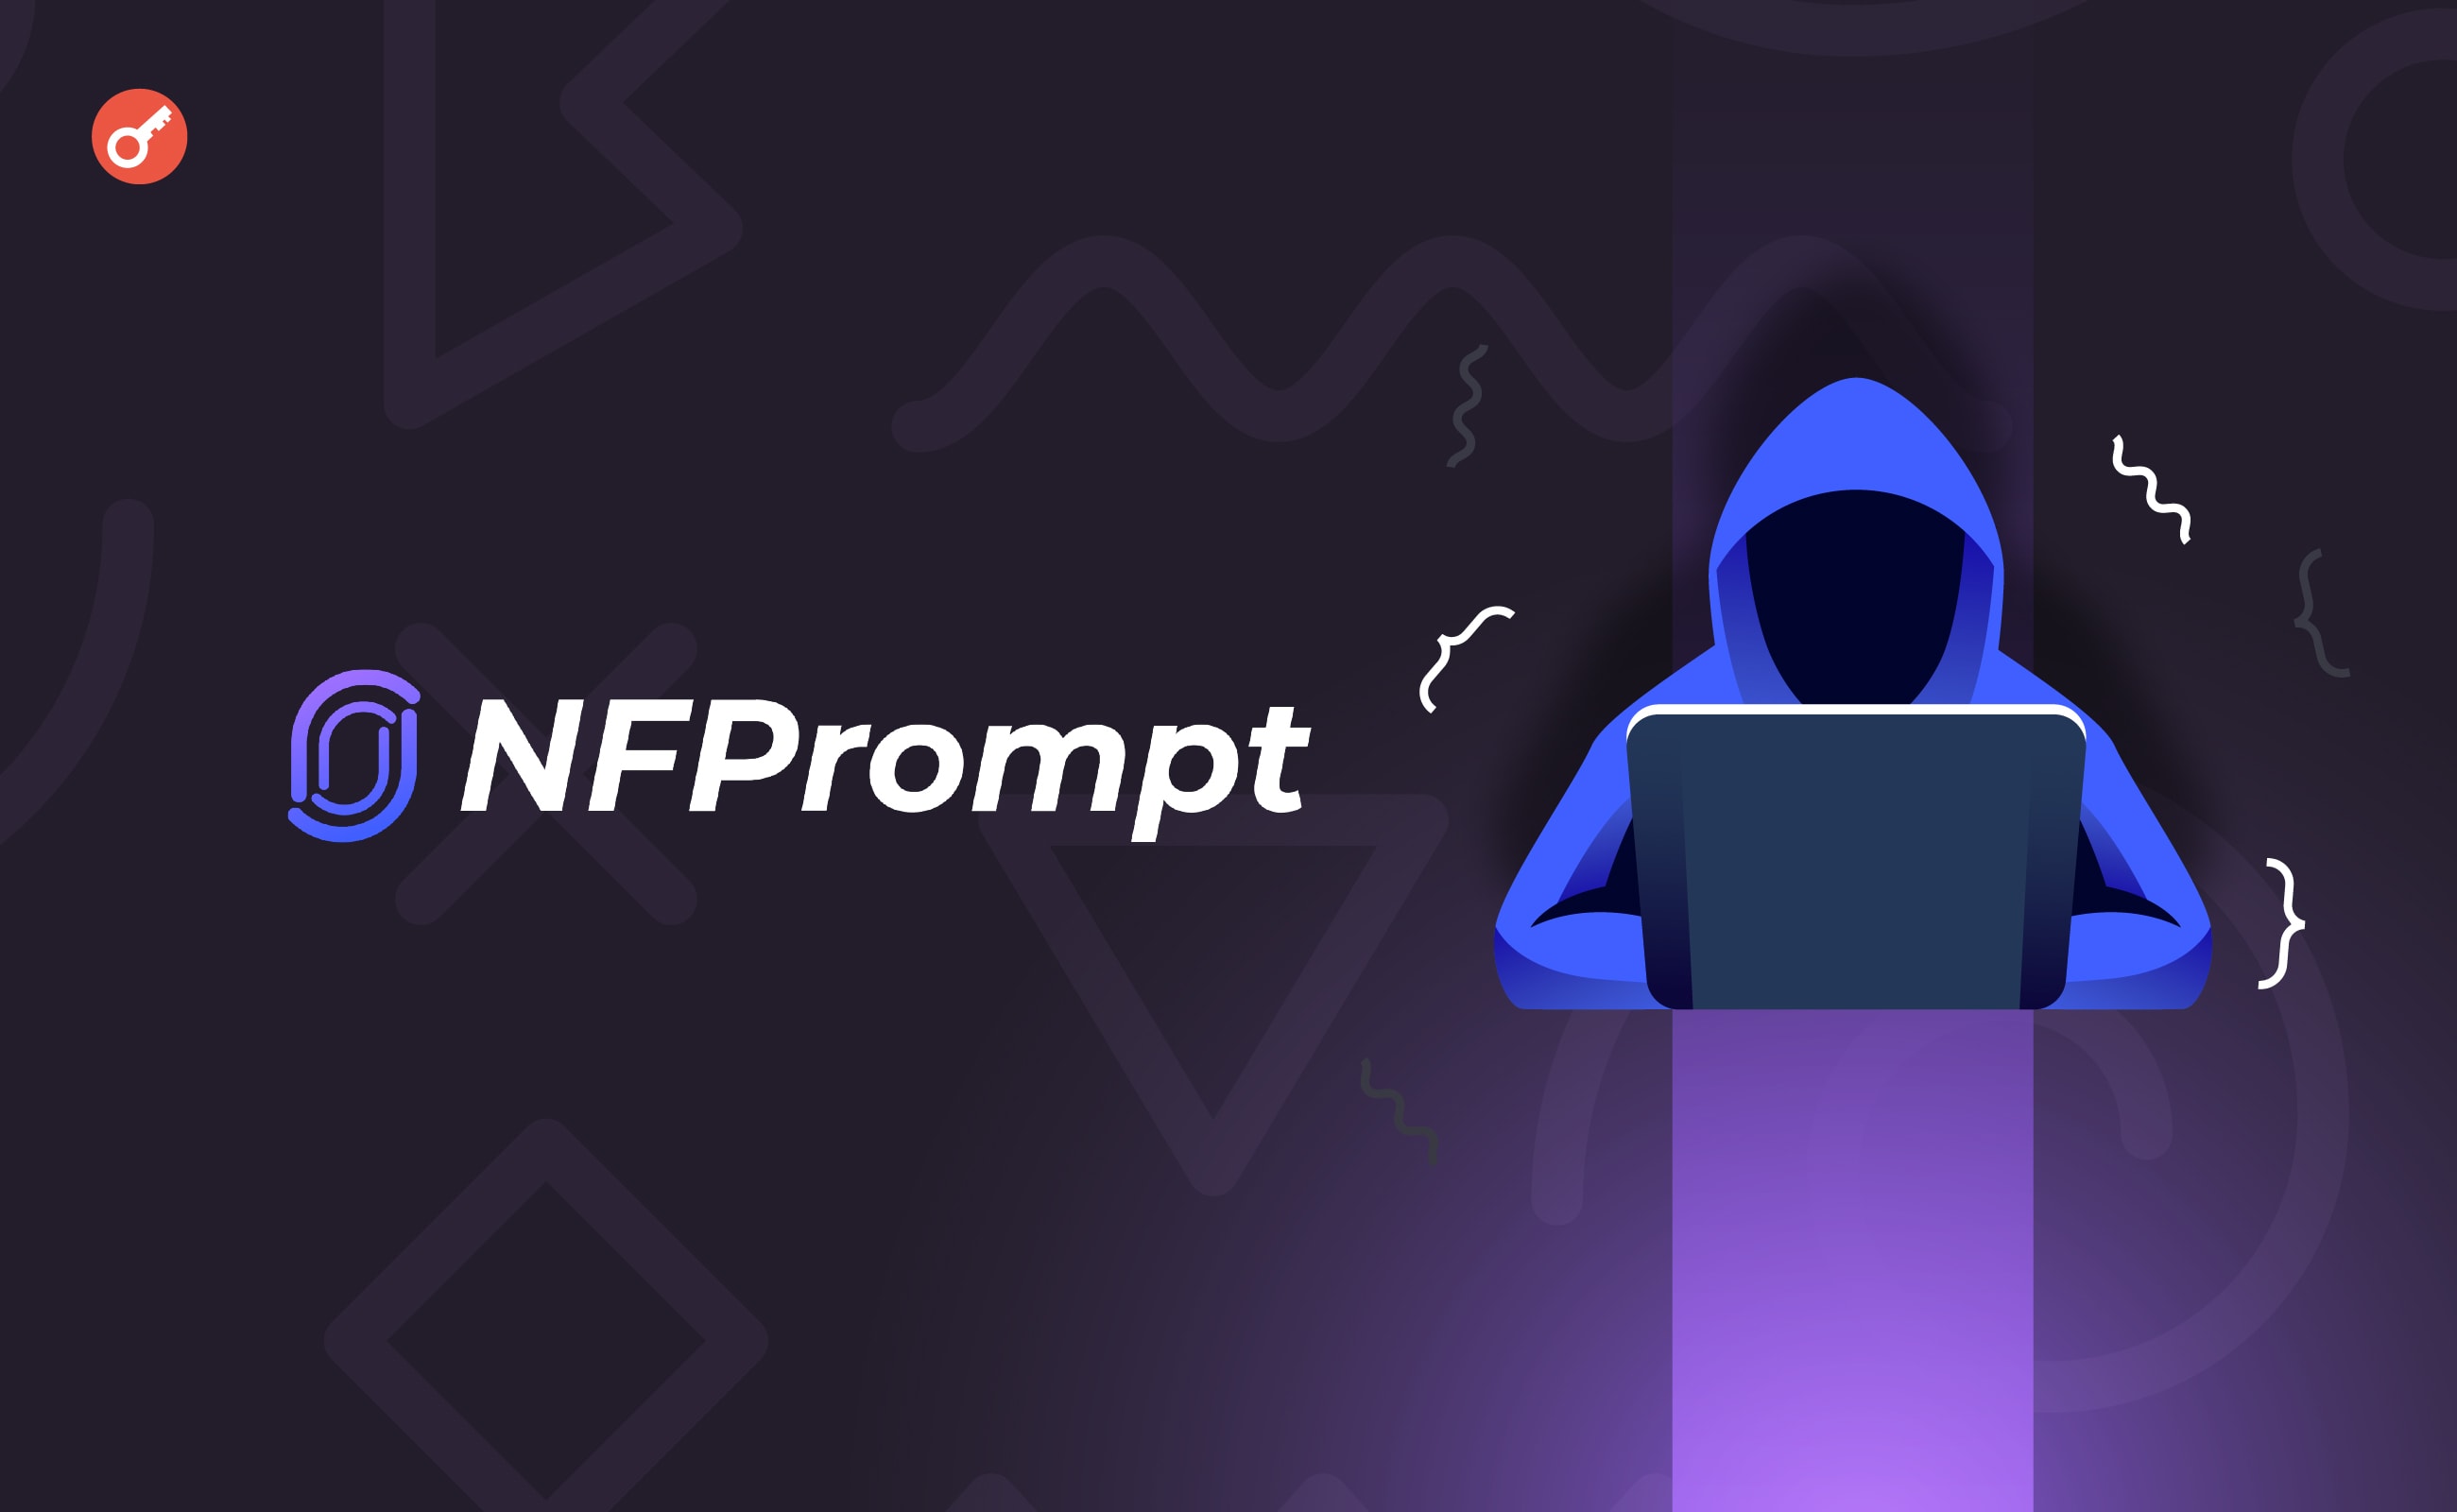 Команда NFPrompt заявила о взломе платформы. Заглавный коллаж новости.